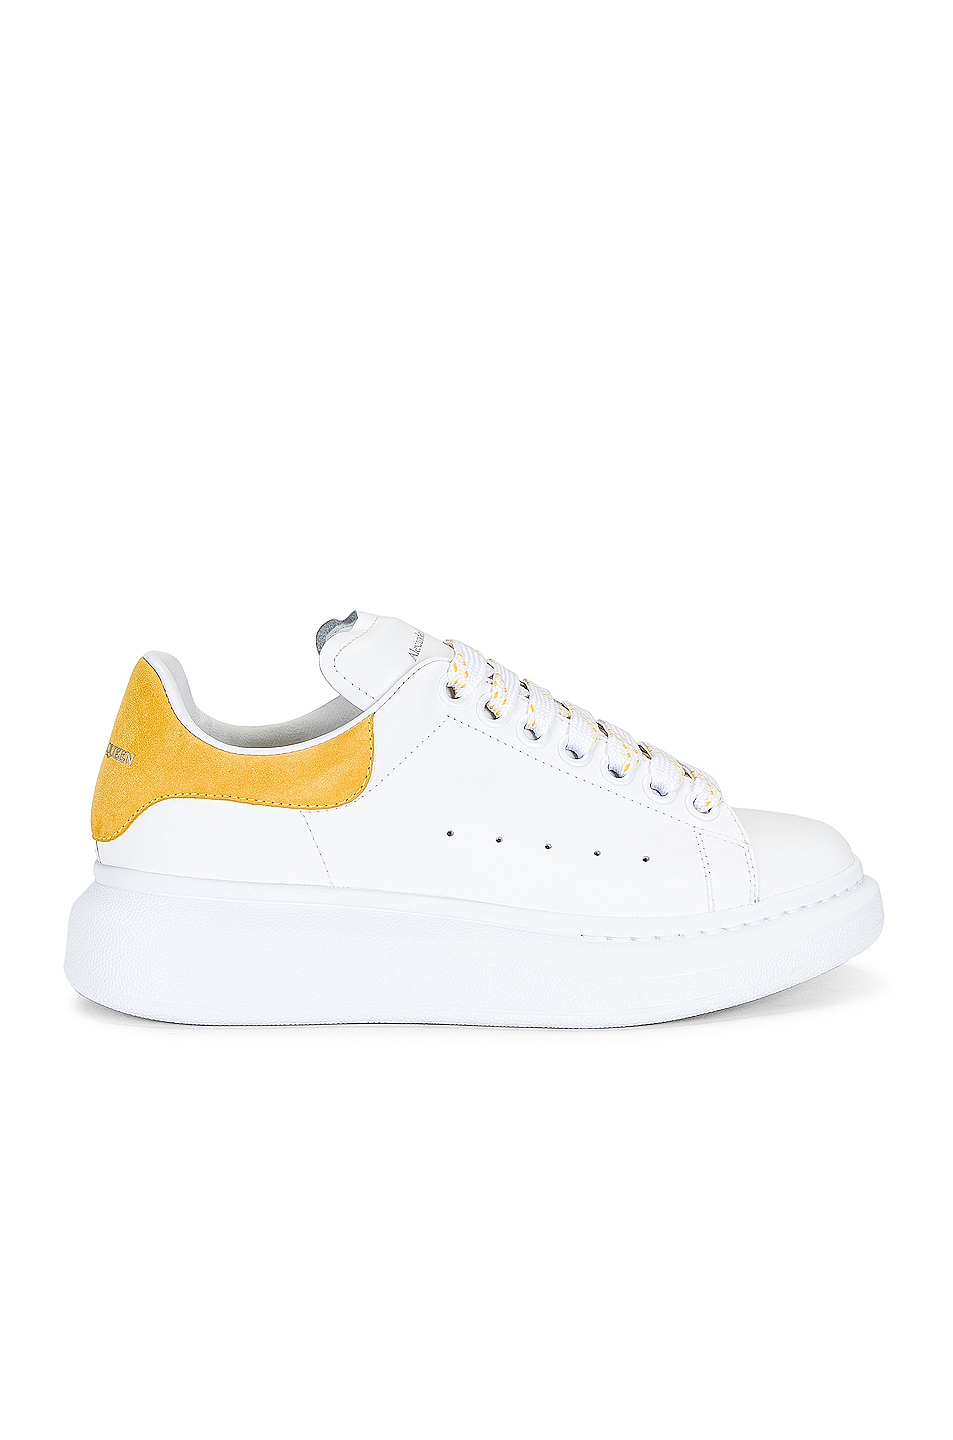 Image 1 of Alexander McQueen Low Top Runner Sneakers in White & Pop Yellow